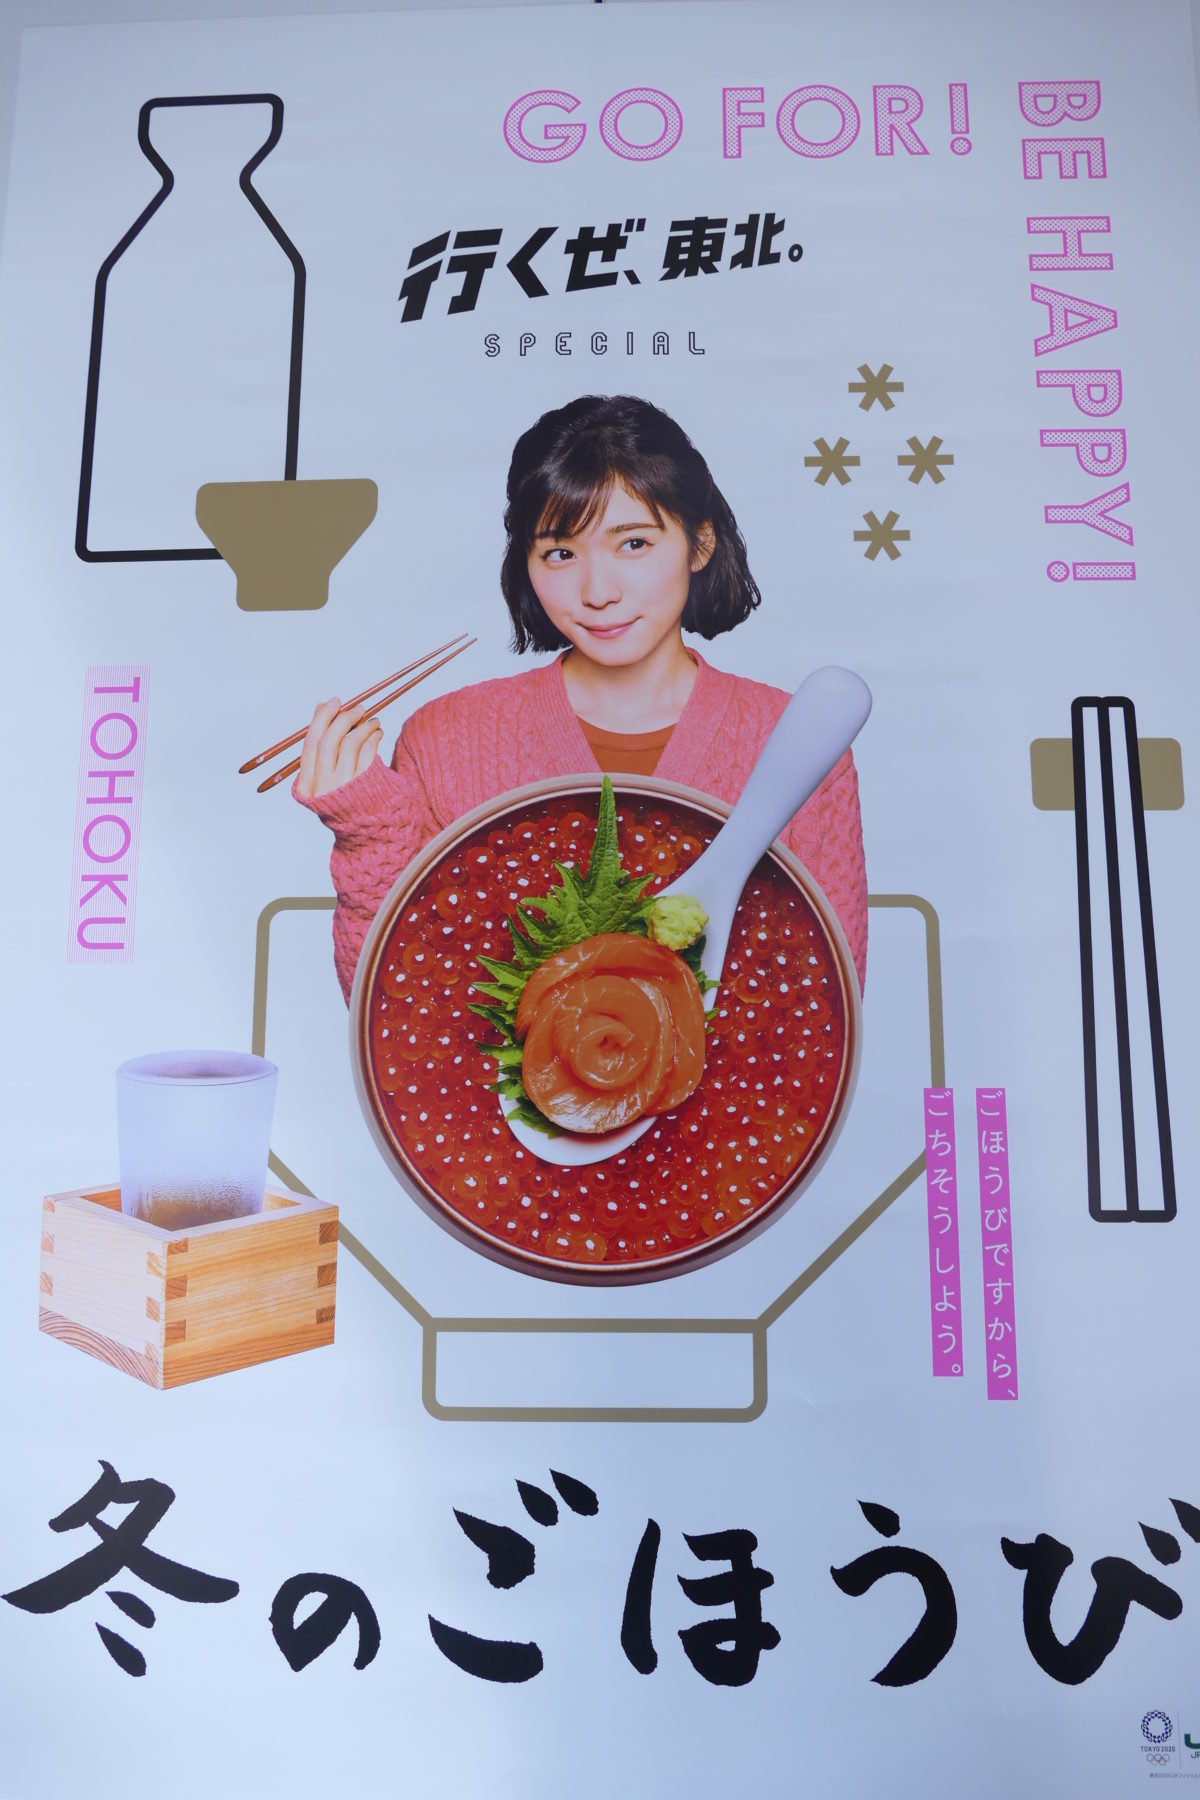 ｊｒ東日本 行くぜ 東北 冬のごほうび のポスターに 創菜旬魚 はしもと の いくら丼 が掲載されました 南三陸さんさん商店街